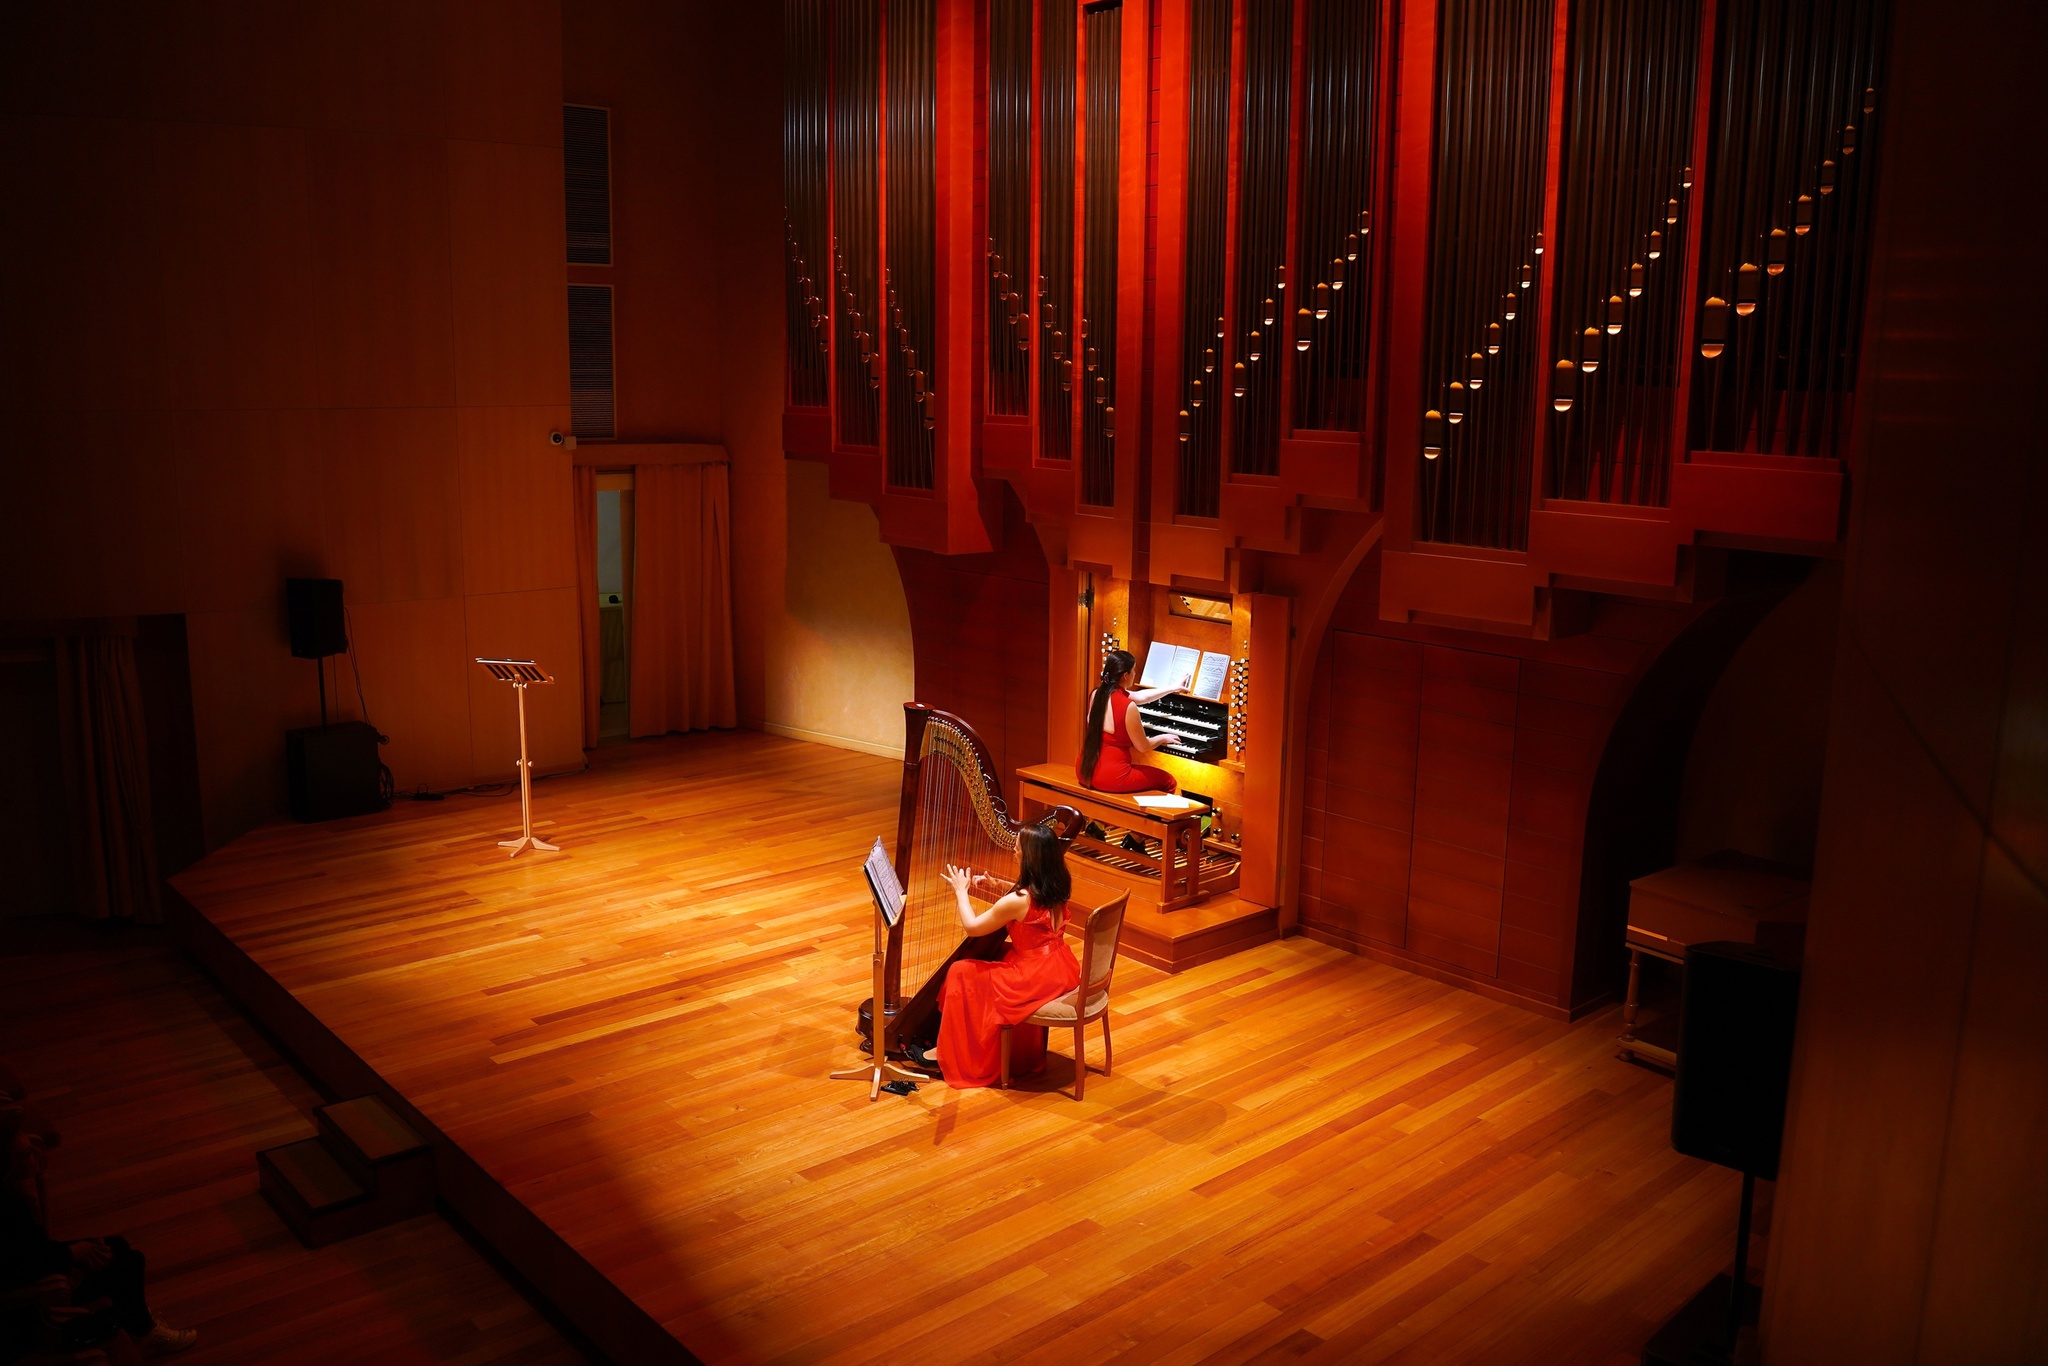 Органный зал «Югра-Классик» наполнился волшебным звучанием арфы и органа!